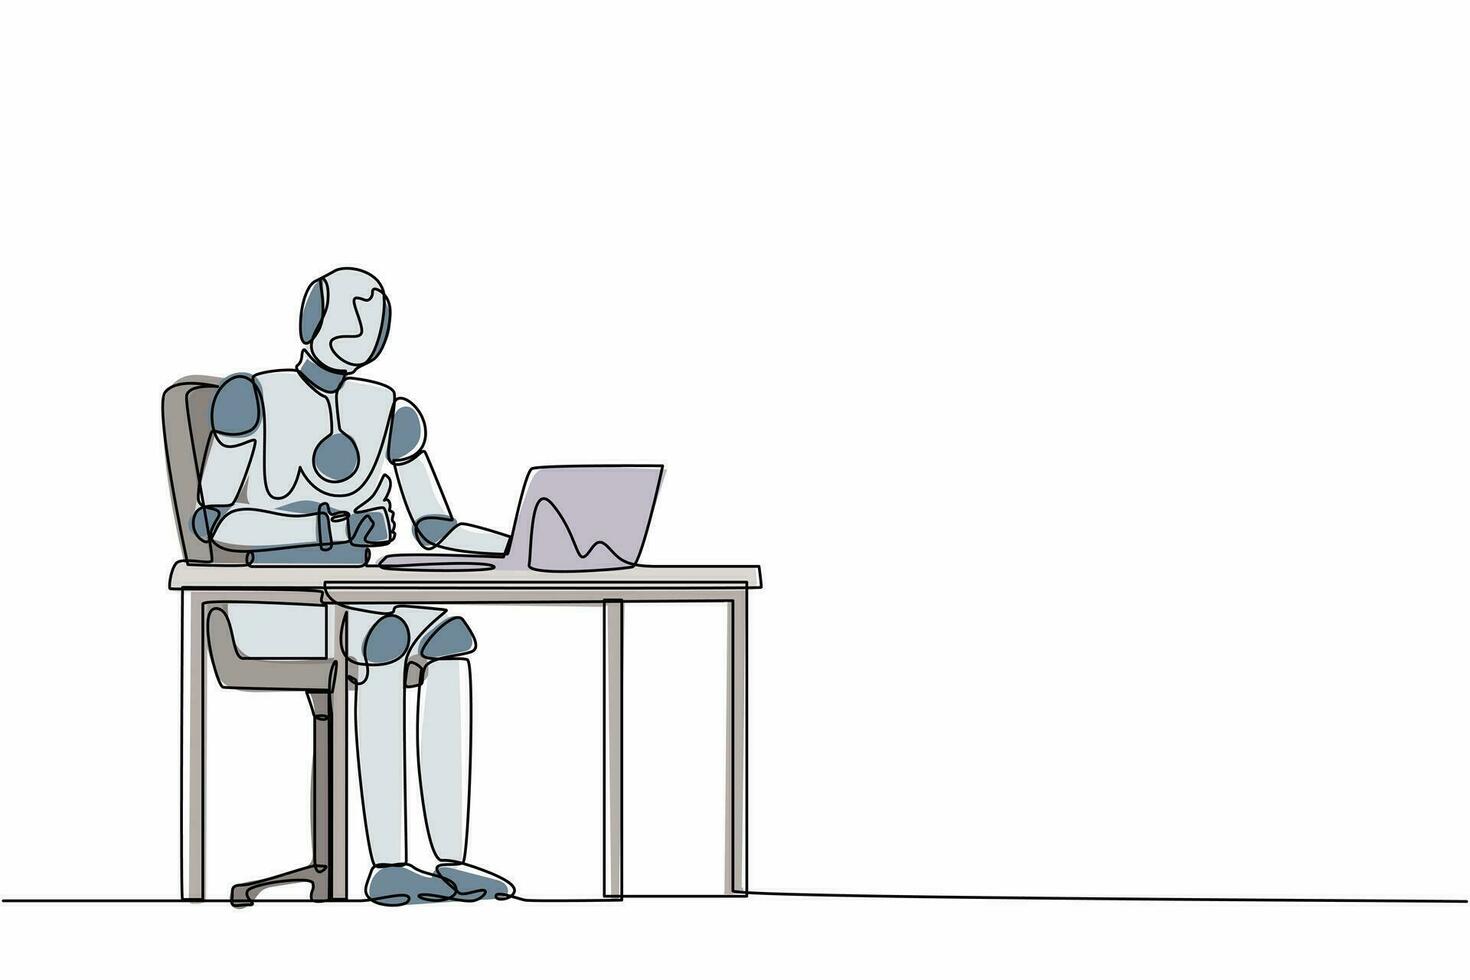 robot di disegno continuo di una linea che dà i pollici in su davanti al computer. organismo cibernetico robot umanoide. futuro concetto di sviluppo della robotica. illustrazione grafica vettoriale di progettazione a linea singola